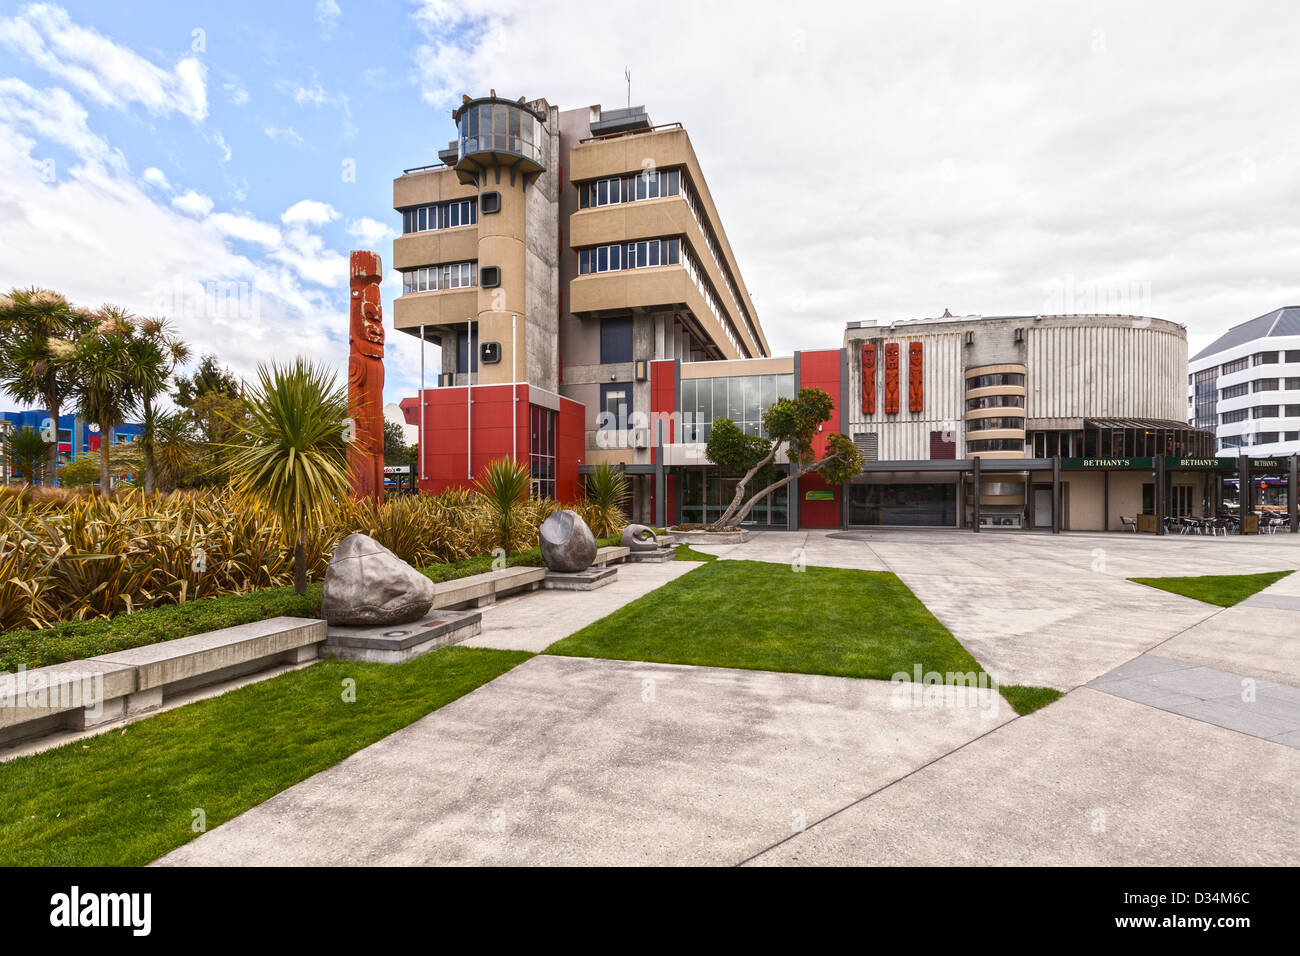 La piazza di Palmerston North, Manawatu Affitto, Nuova Zelanda, con gli uffici del Comune. Foto Stock